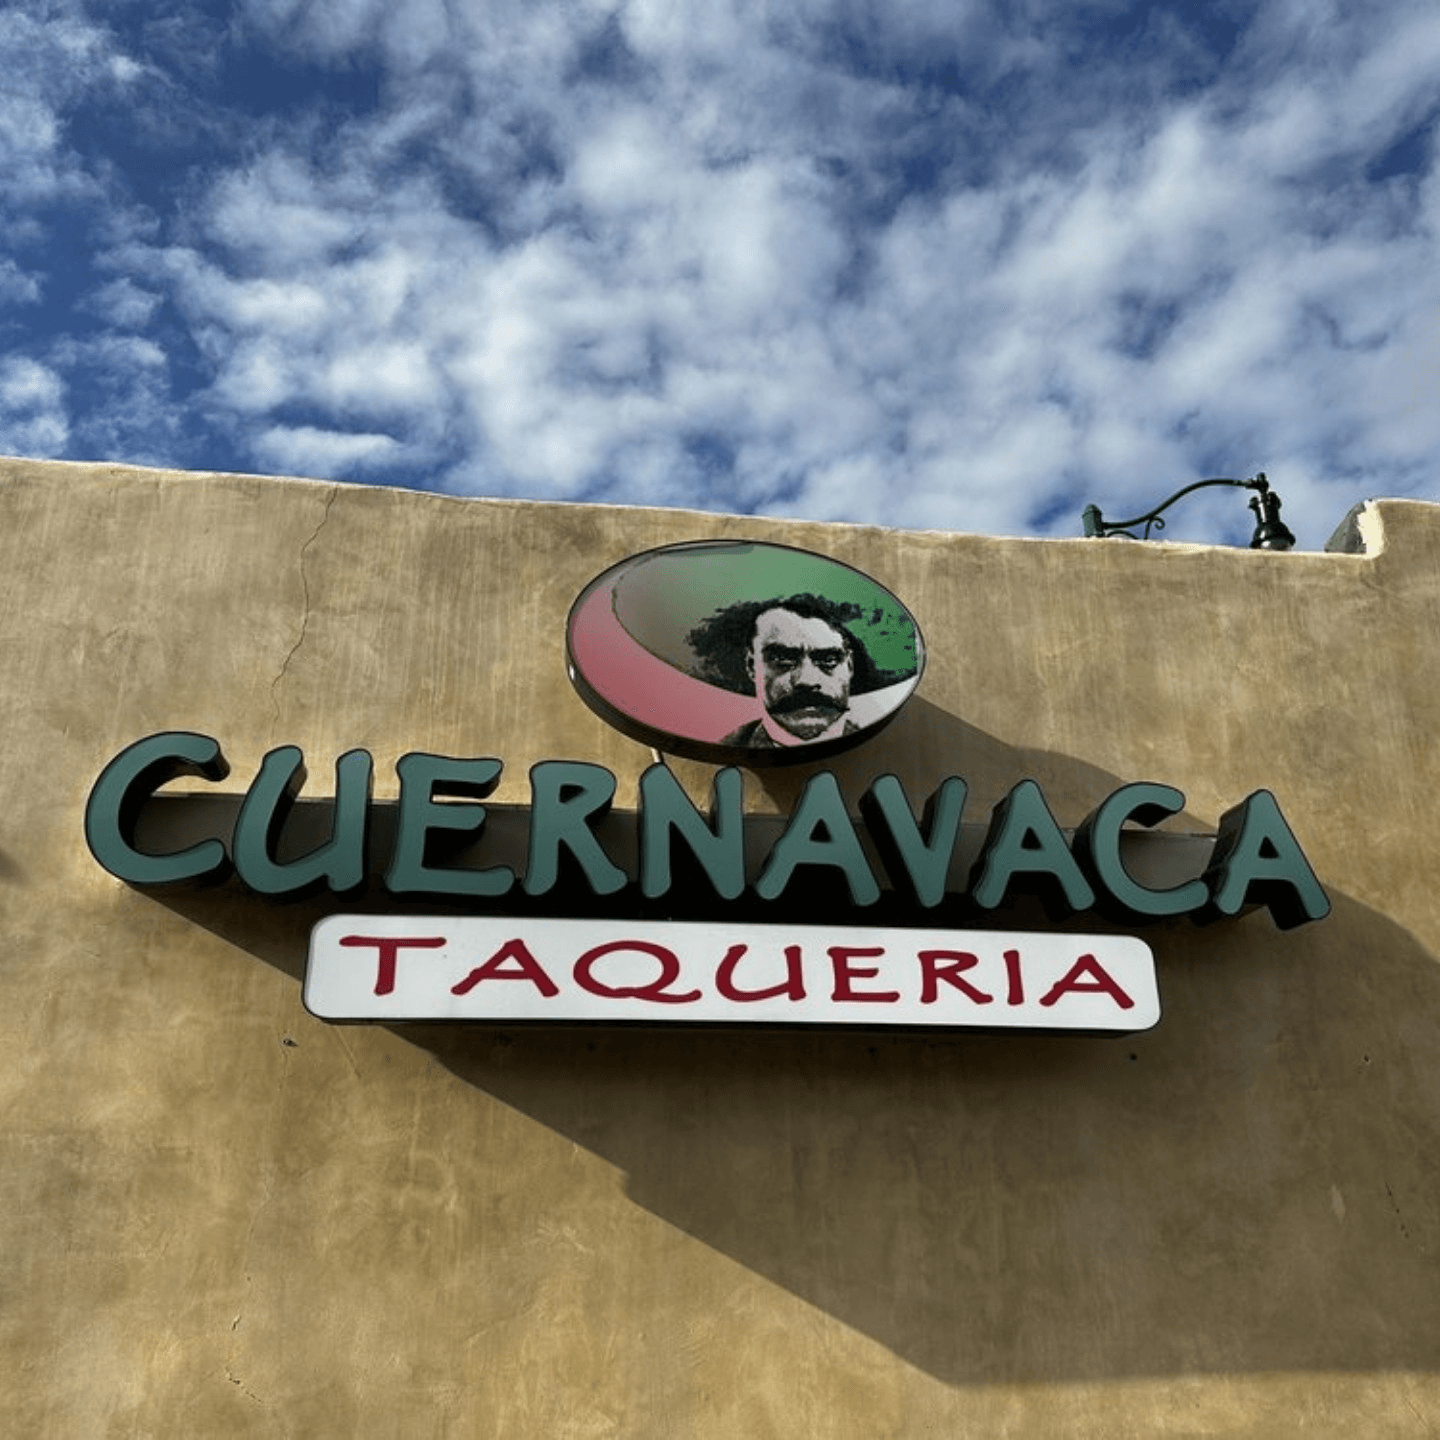 About Taqueria Cuernavaca